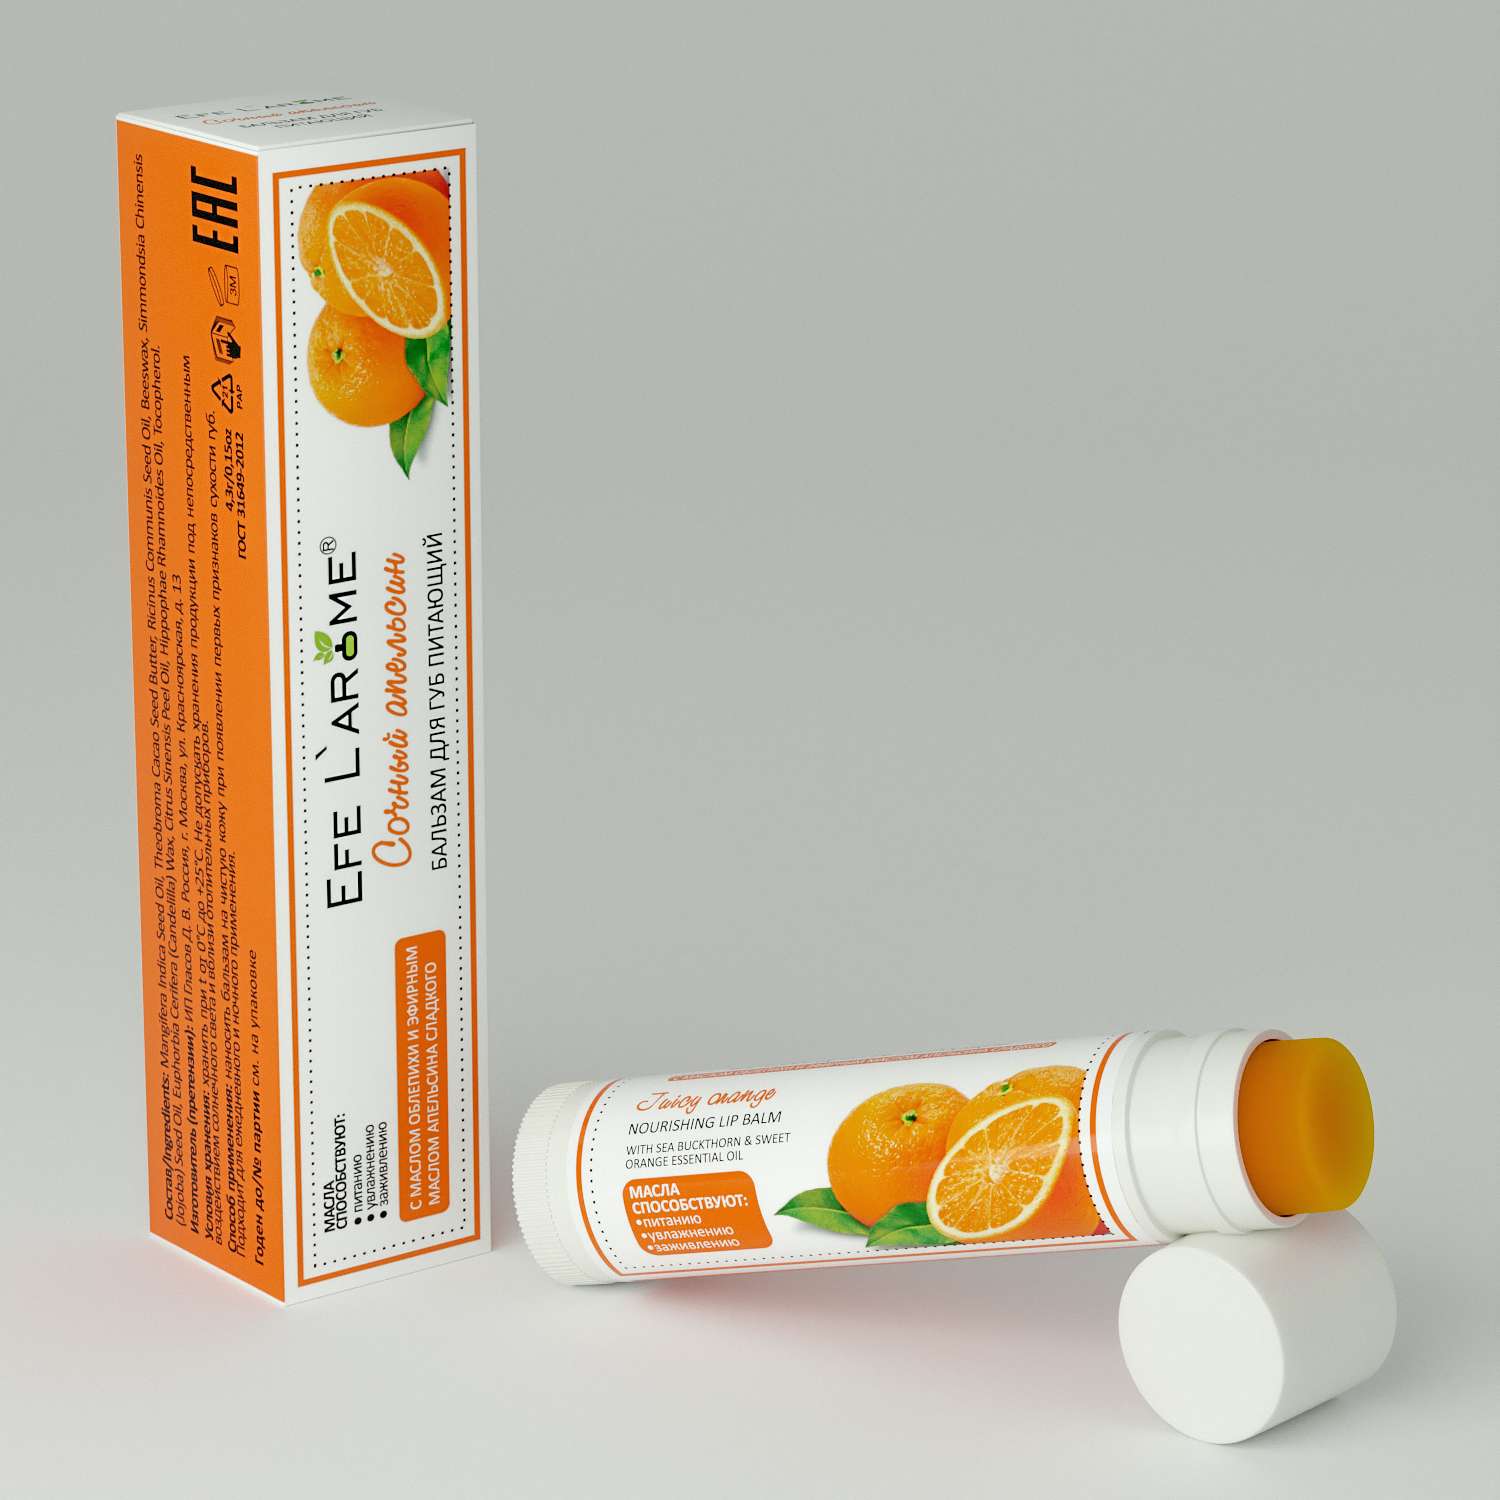 Бальзам для губ Efe L’arome Сочный апельсин питание с эфирным маслом апельсина сладкого - фото 1